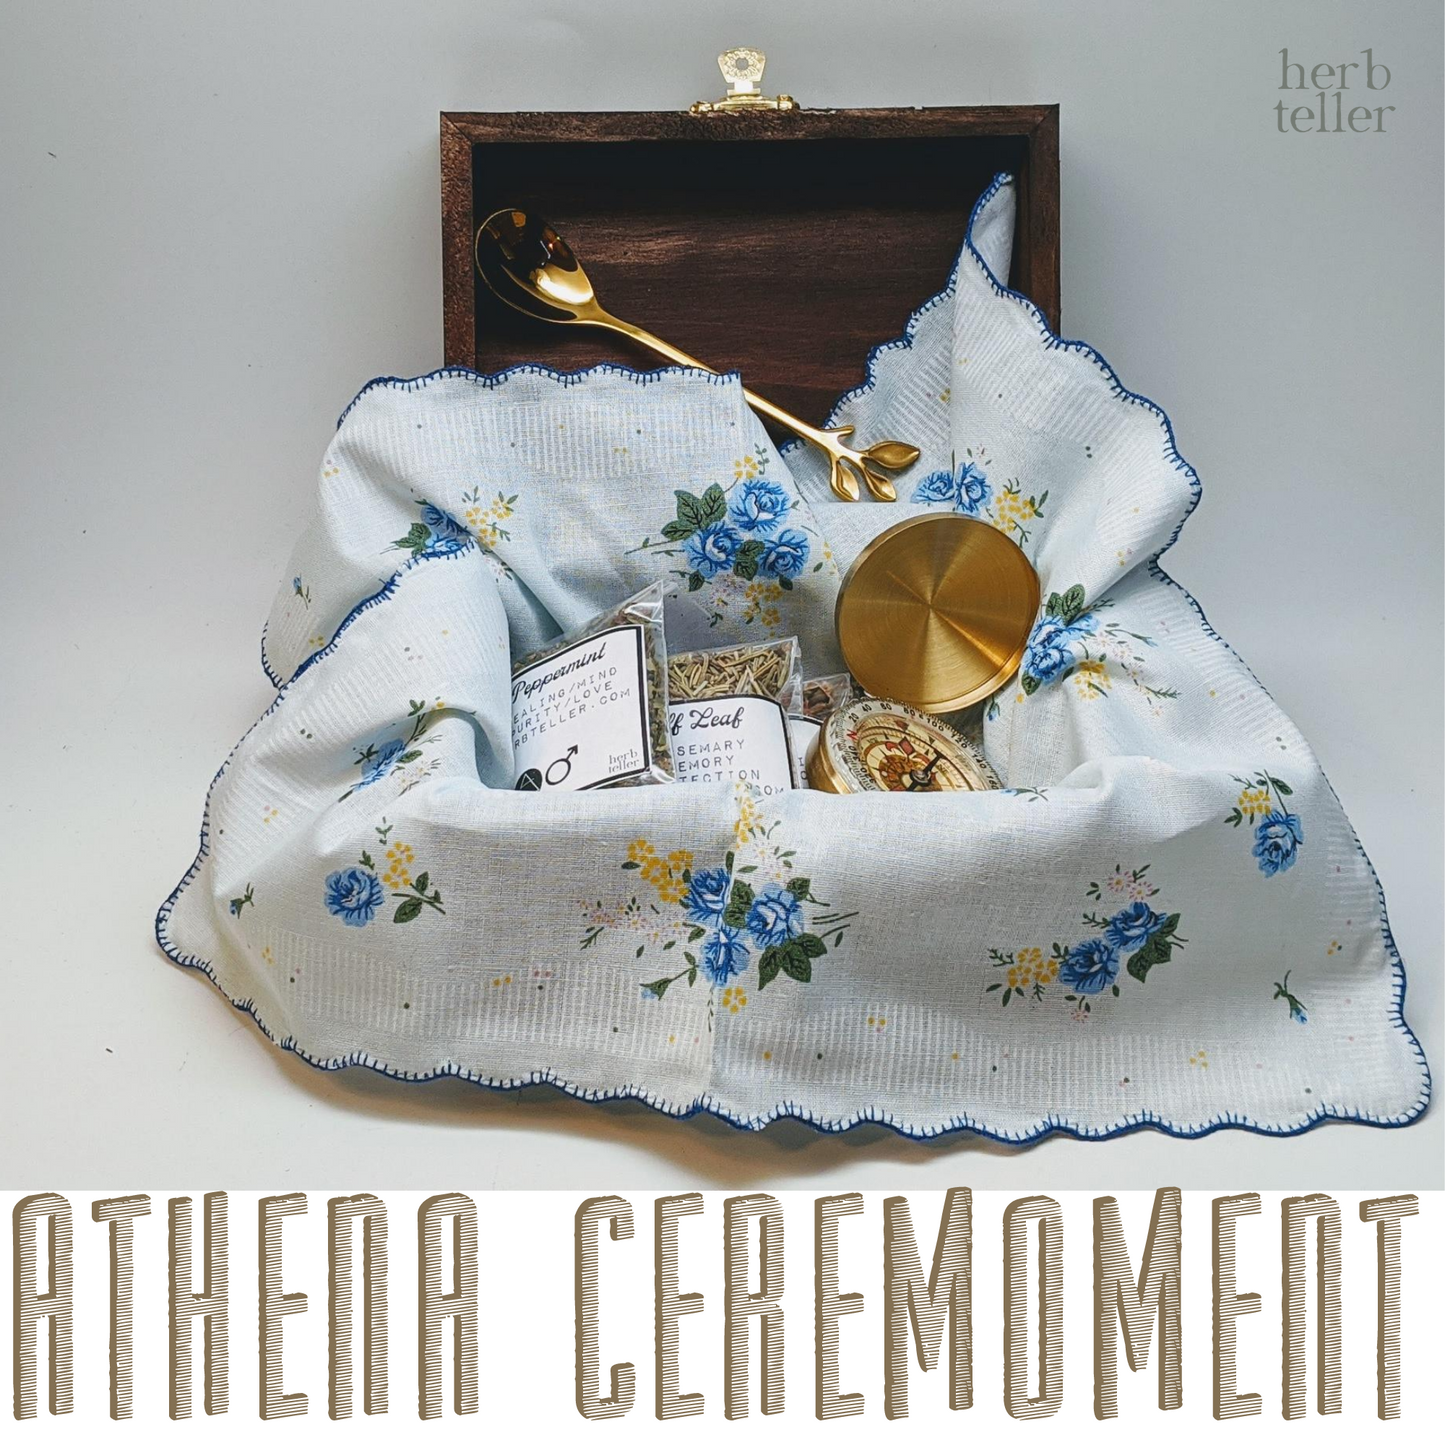 I, Athena Ceremoment - Original City Apothecary